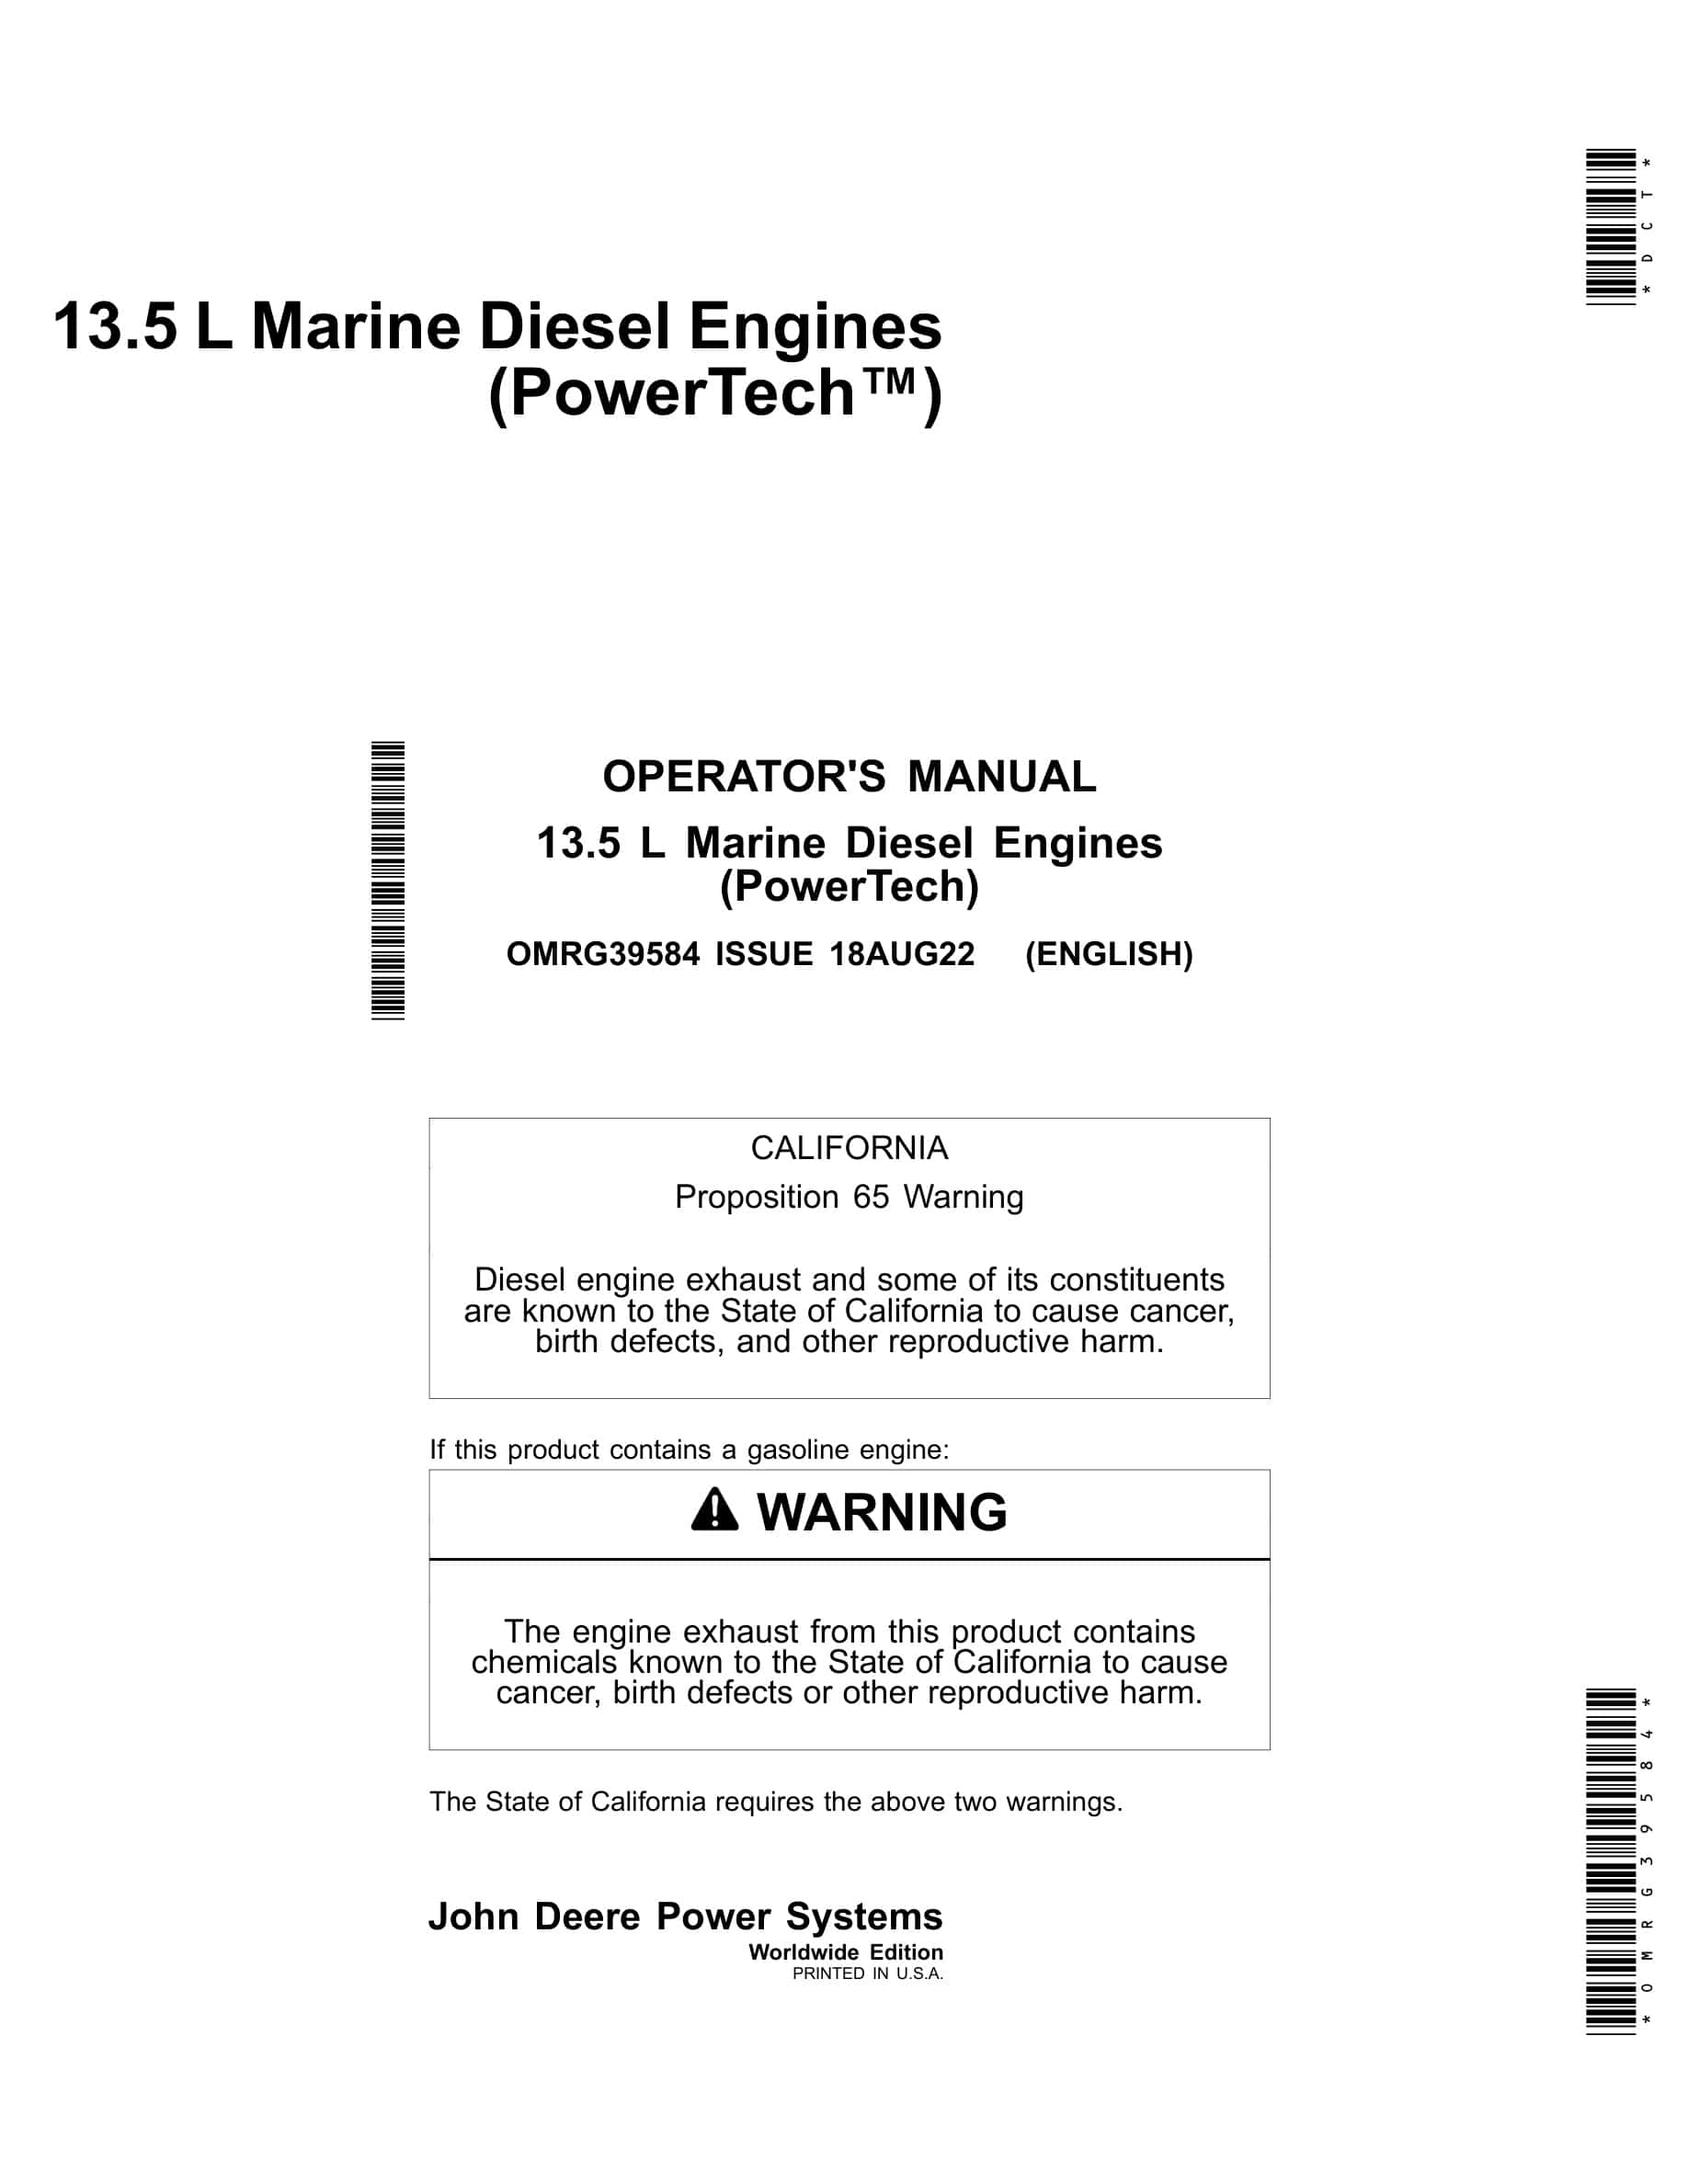 John Deere PowerTech 13.5 L Marine Diesel Engines Operator Manual OMRG39584-1